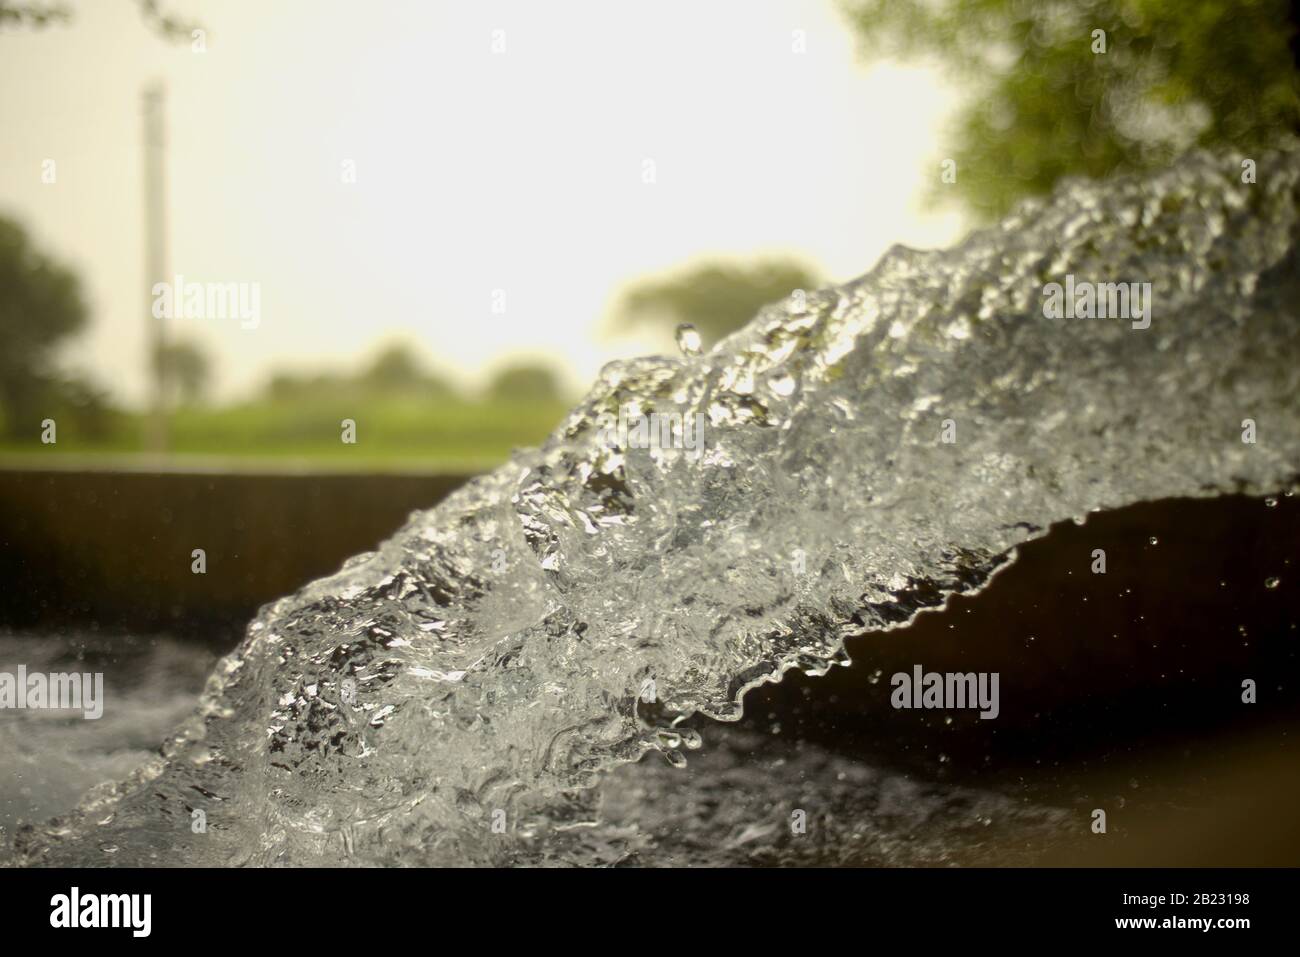 Corrente tubewell acqua dolce in campi durante l'estate Foto Stock